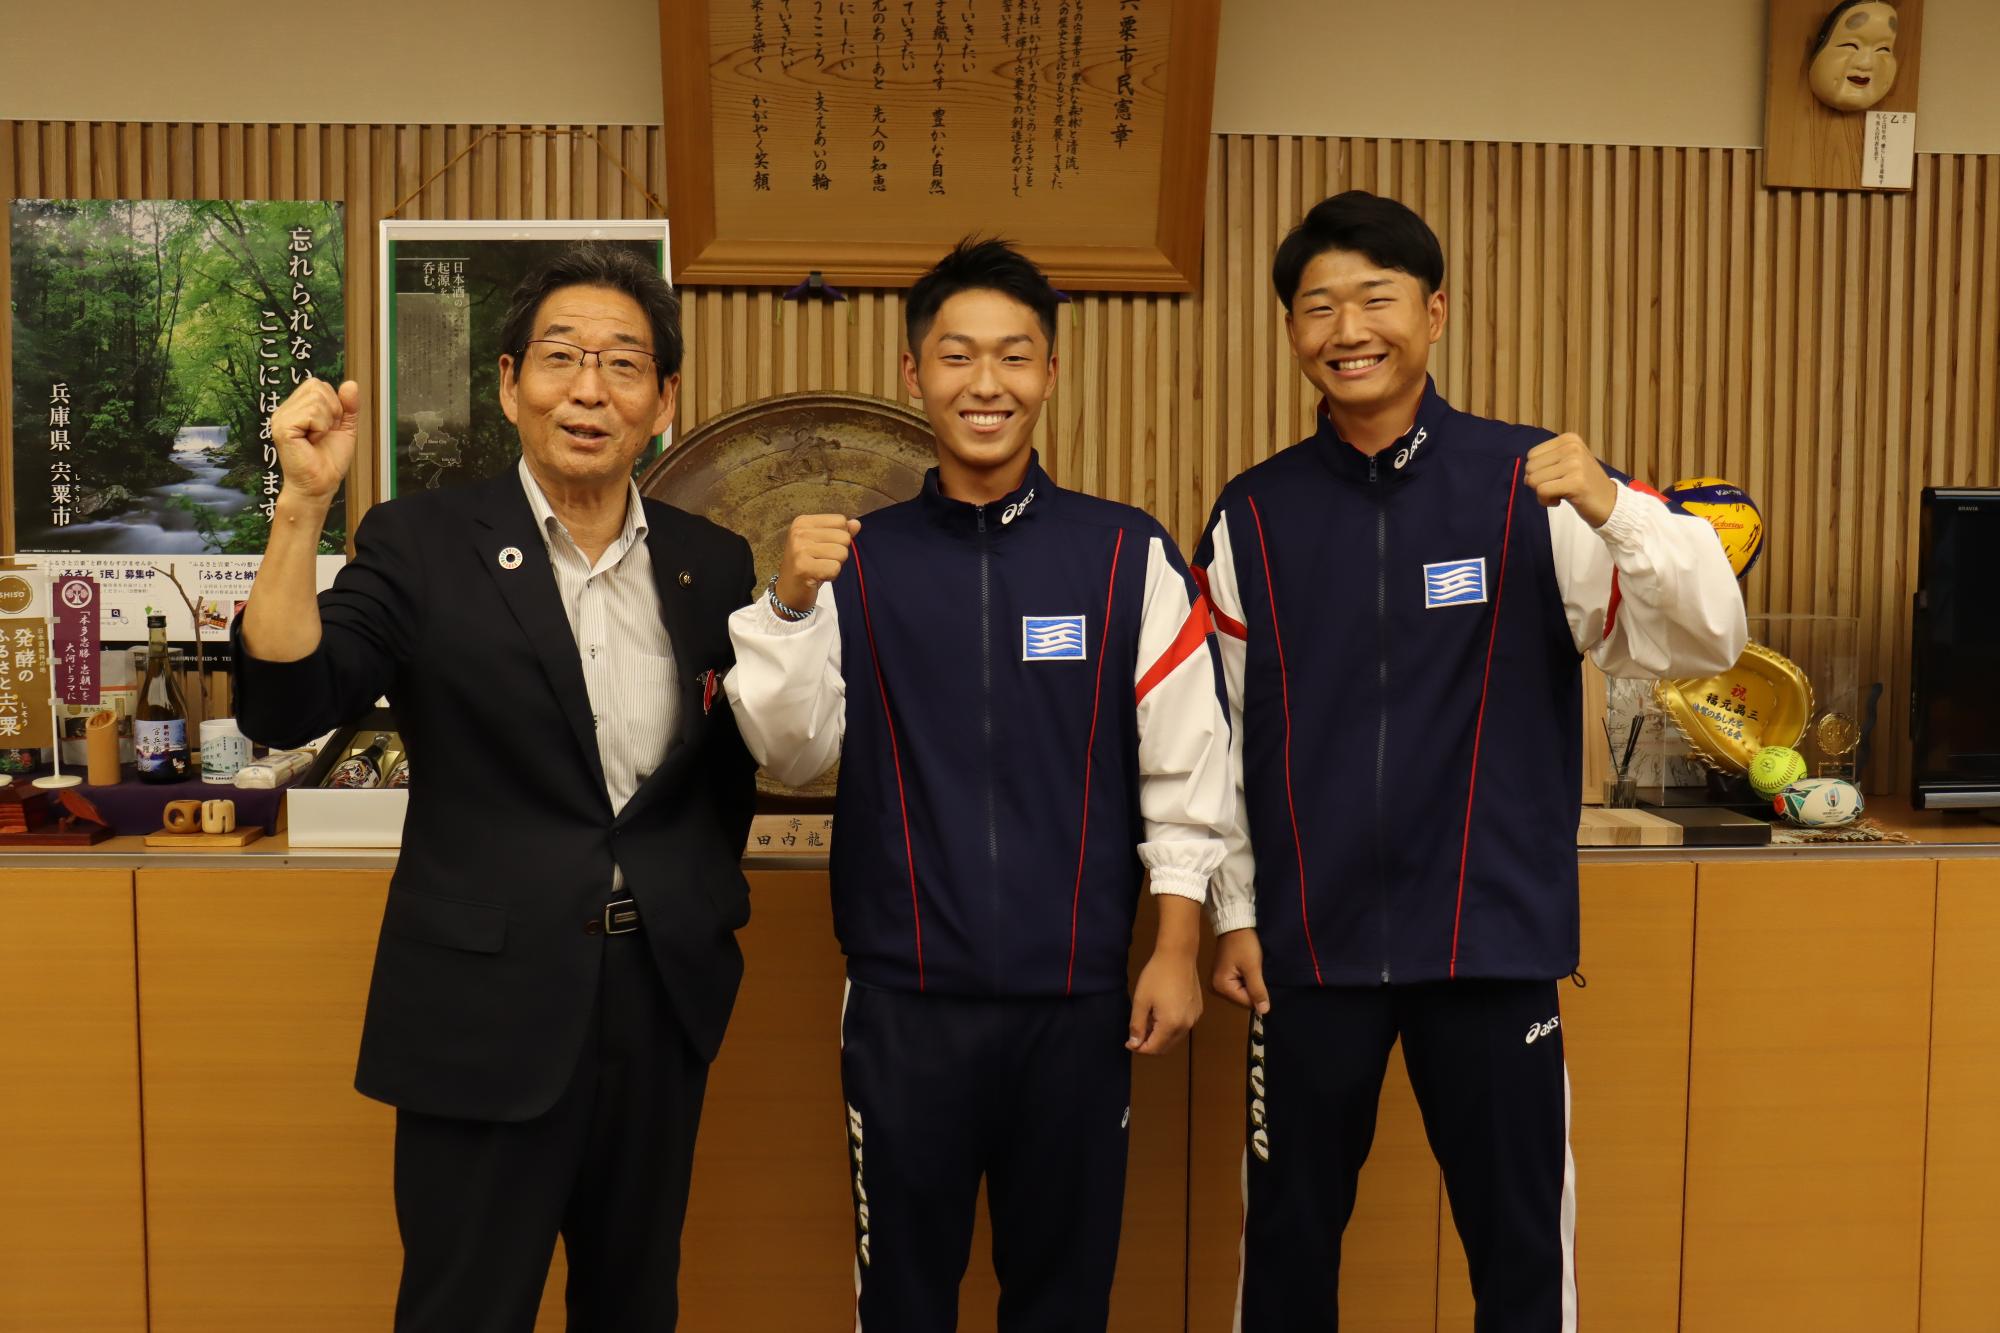 福元市長とソフトボールで国体出場される山崎高校の中川さんと早川さんの写真